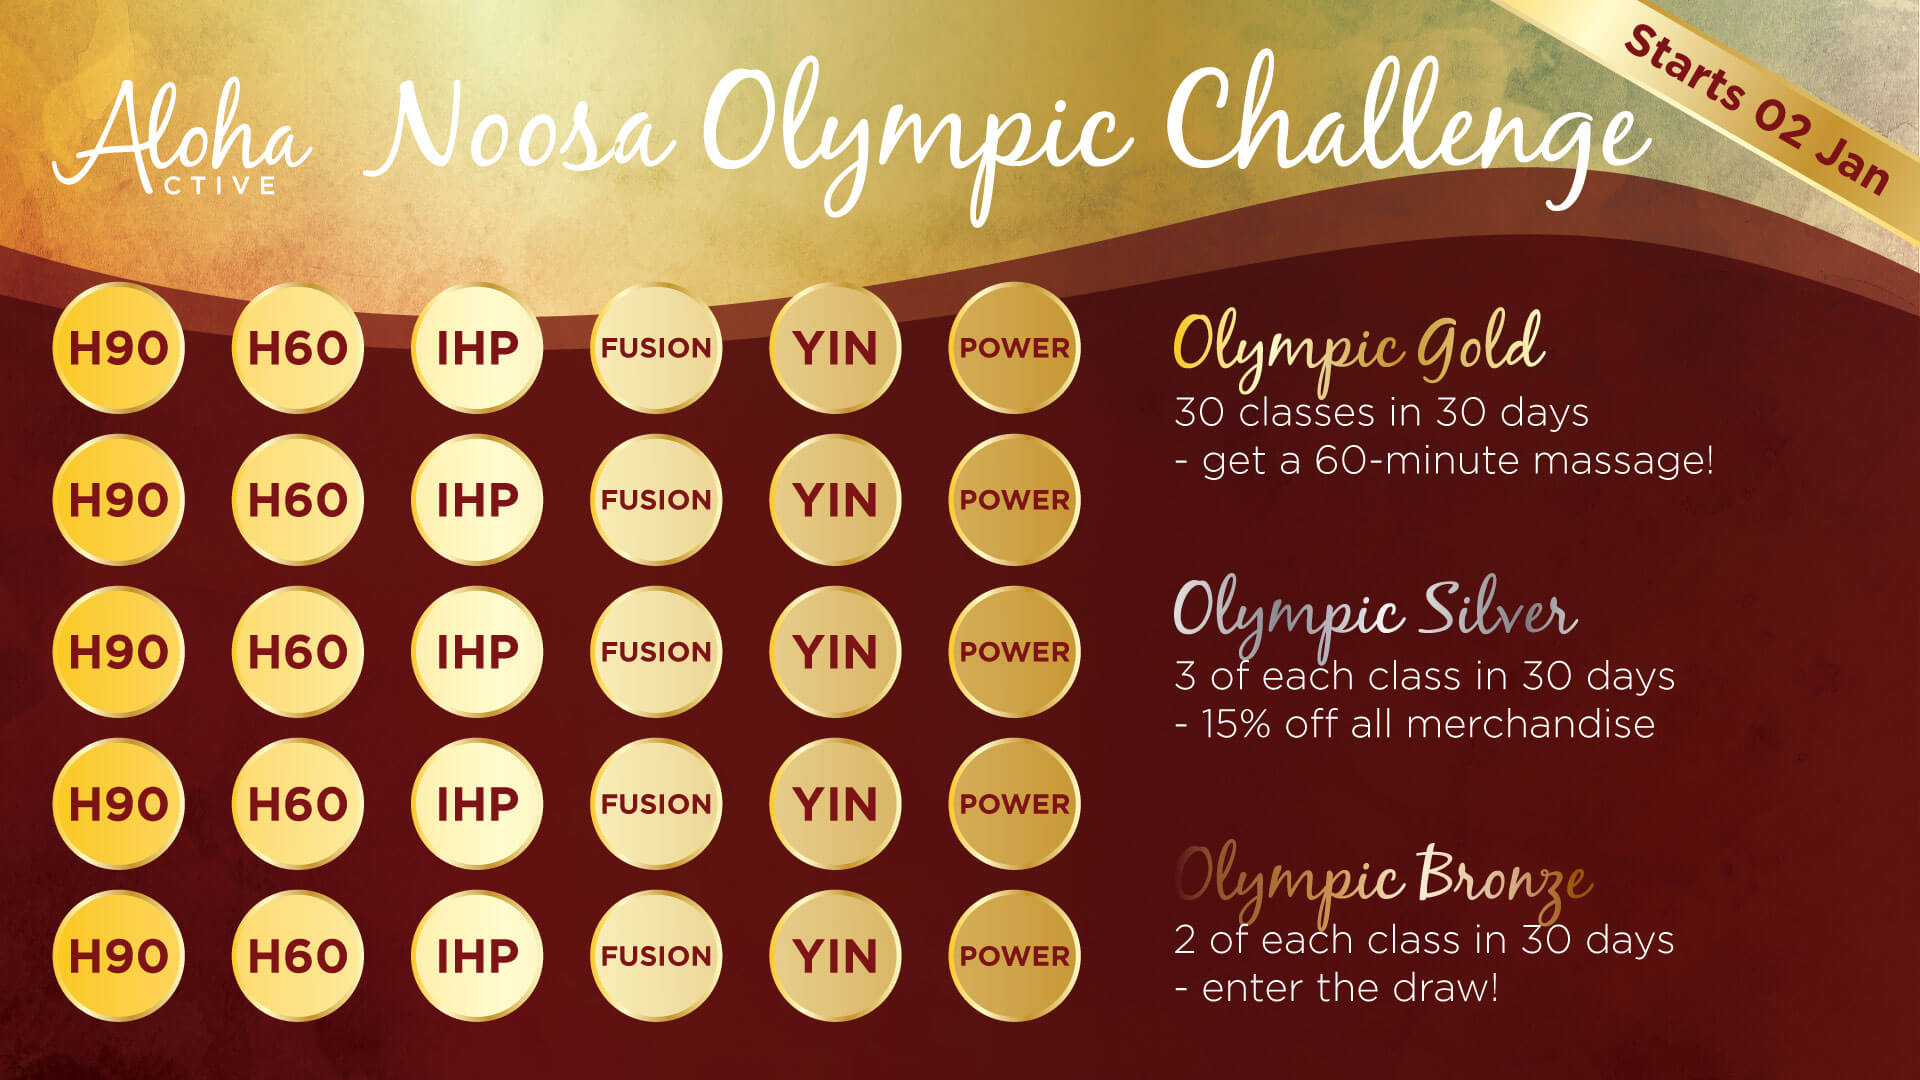 Aloha Active Noosa - New Years Olympic Challenge